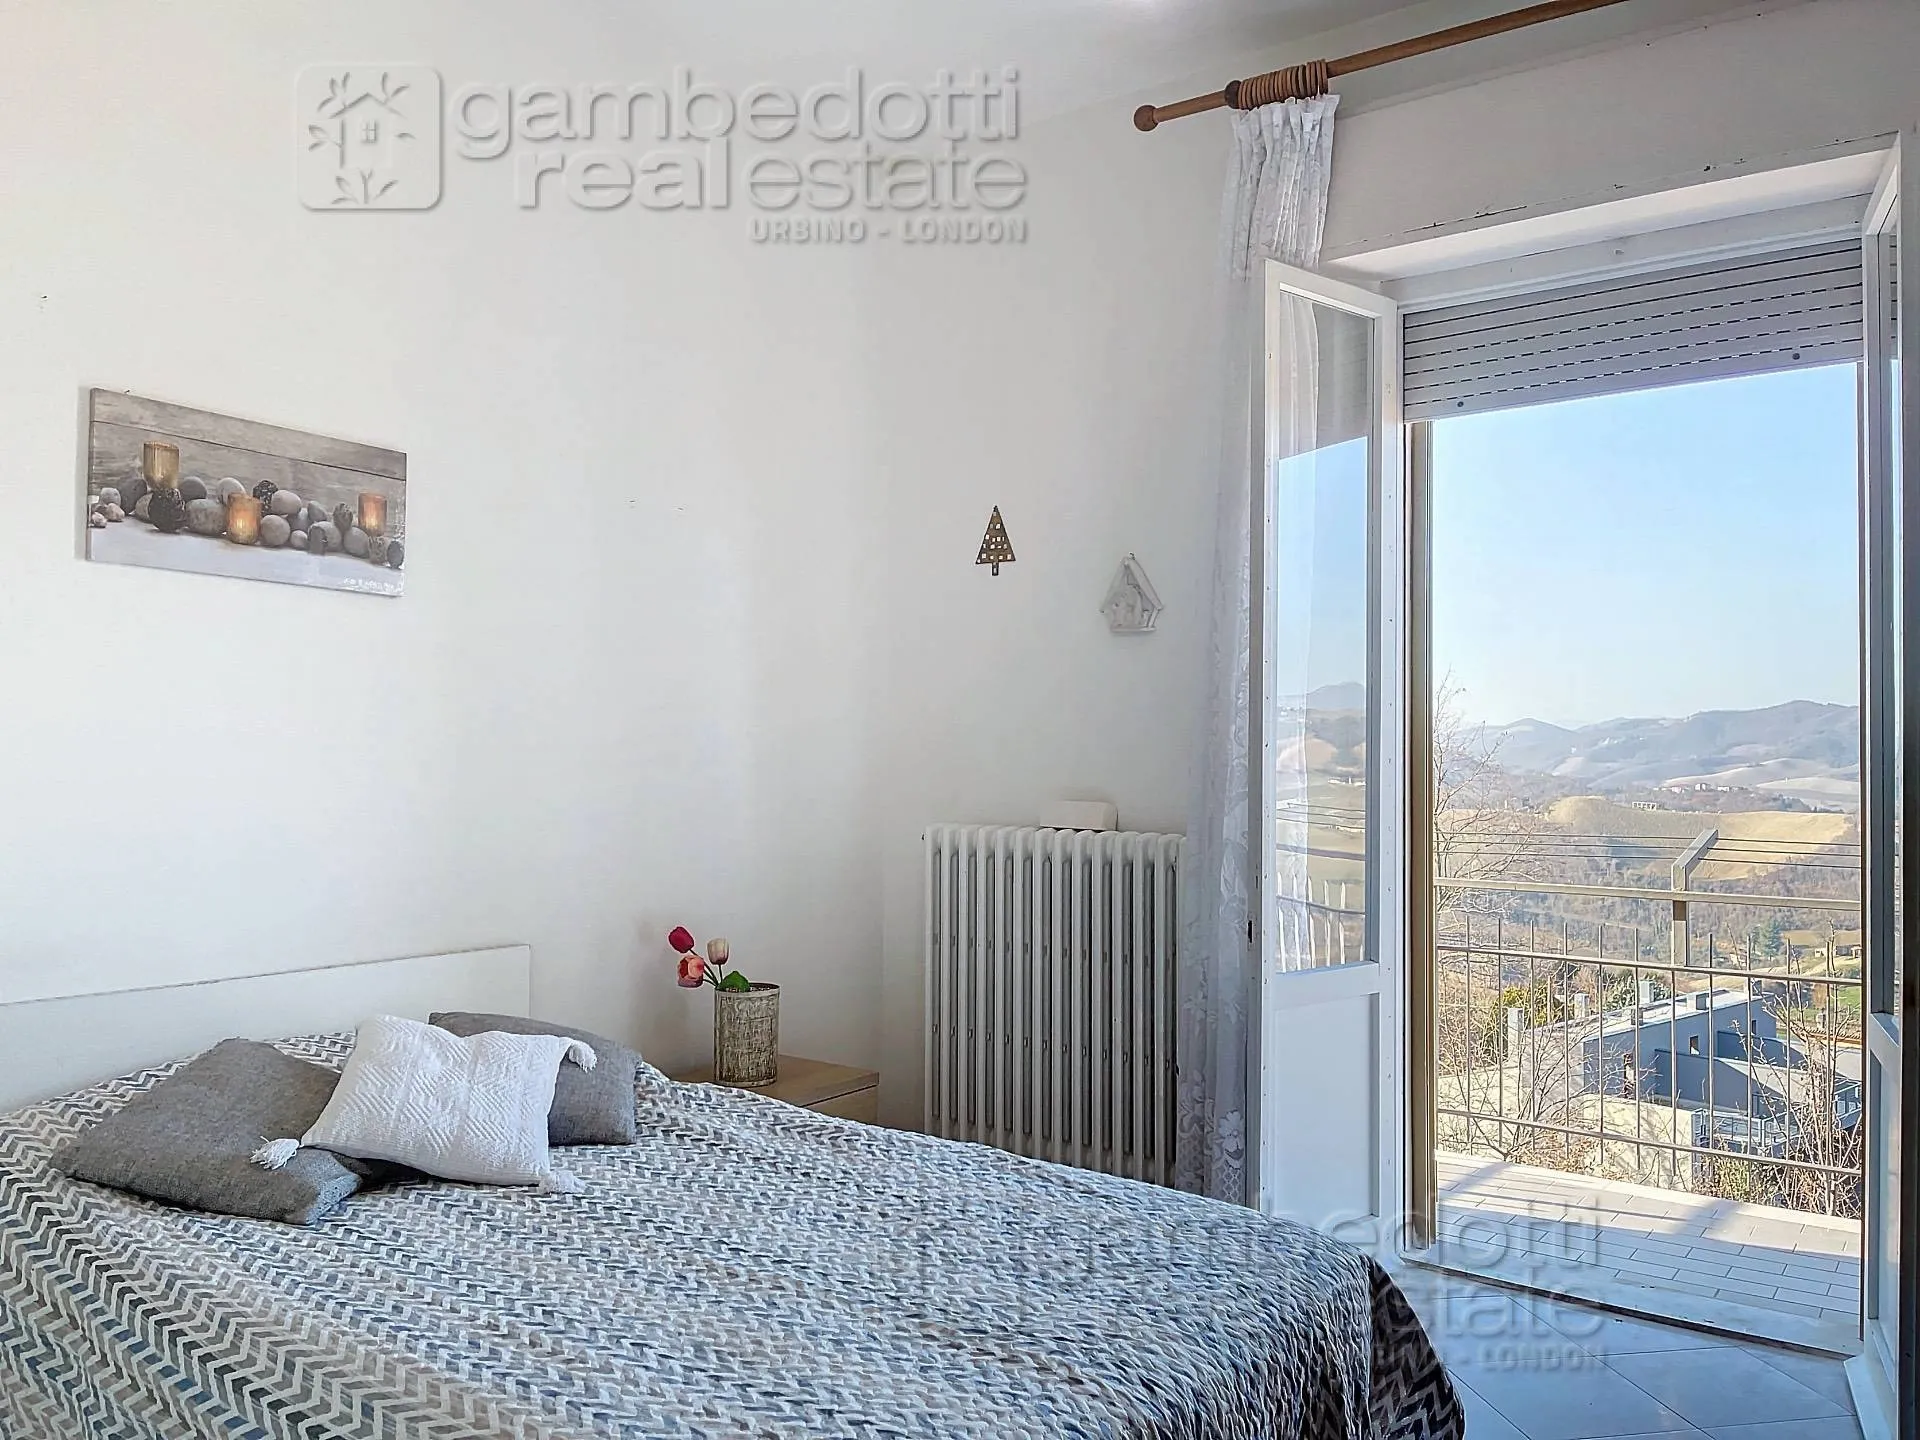 Immagine per Casa indipendente in vendita a Urbino